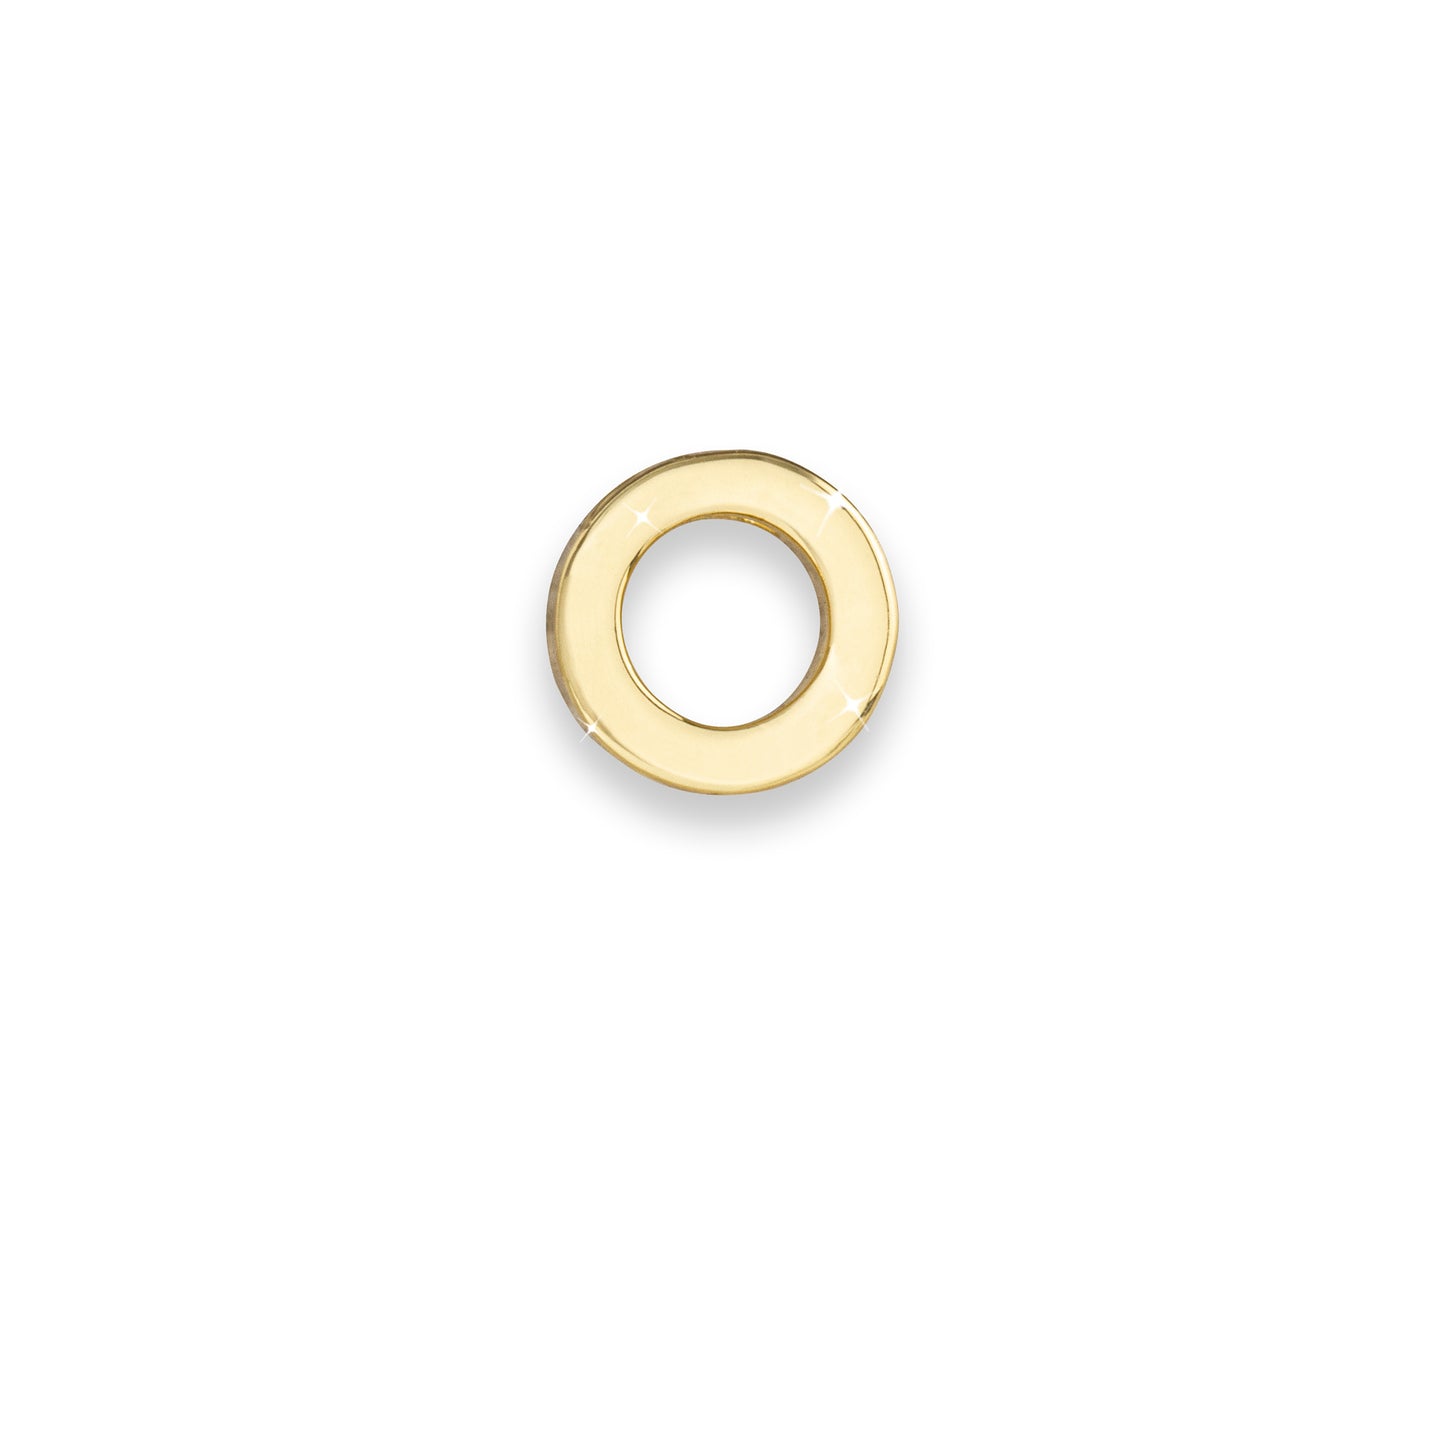 Gold letter O monogram charm for necklaces & bracelets